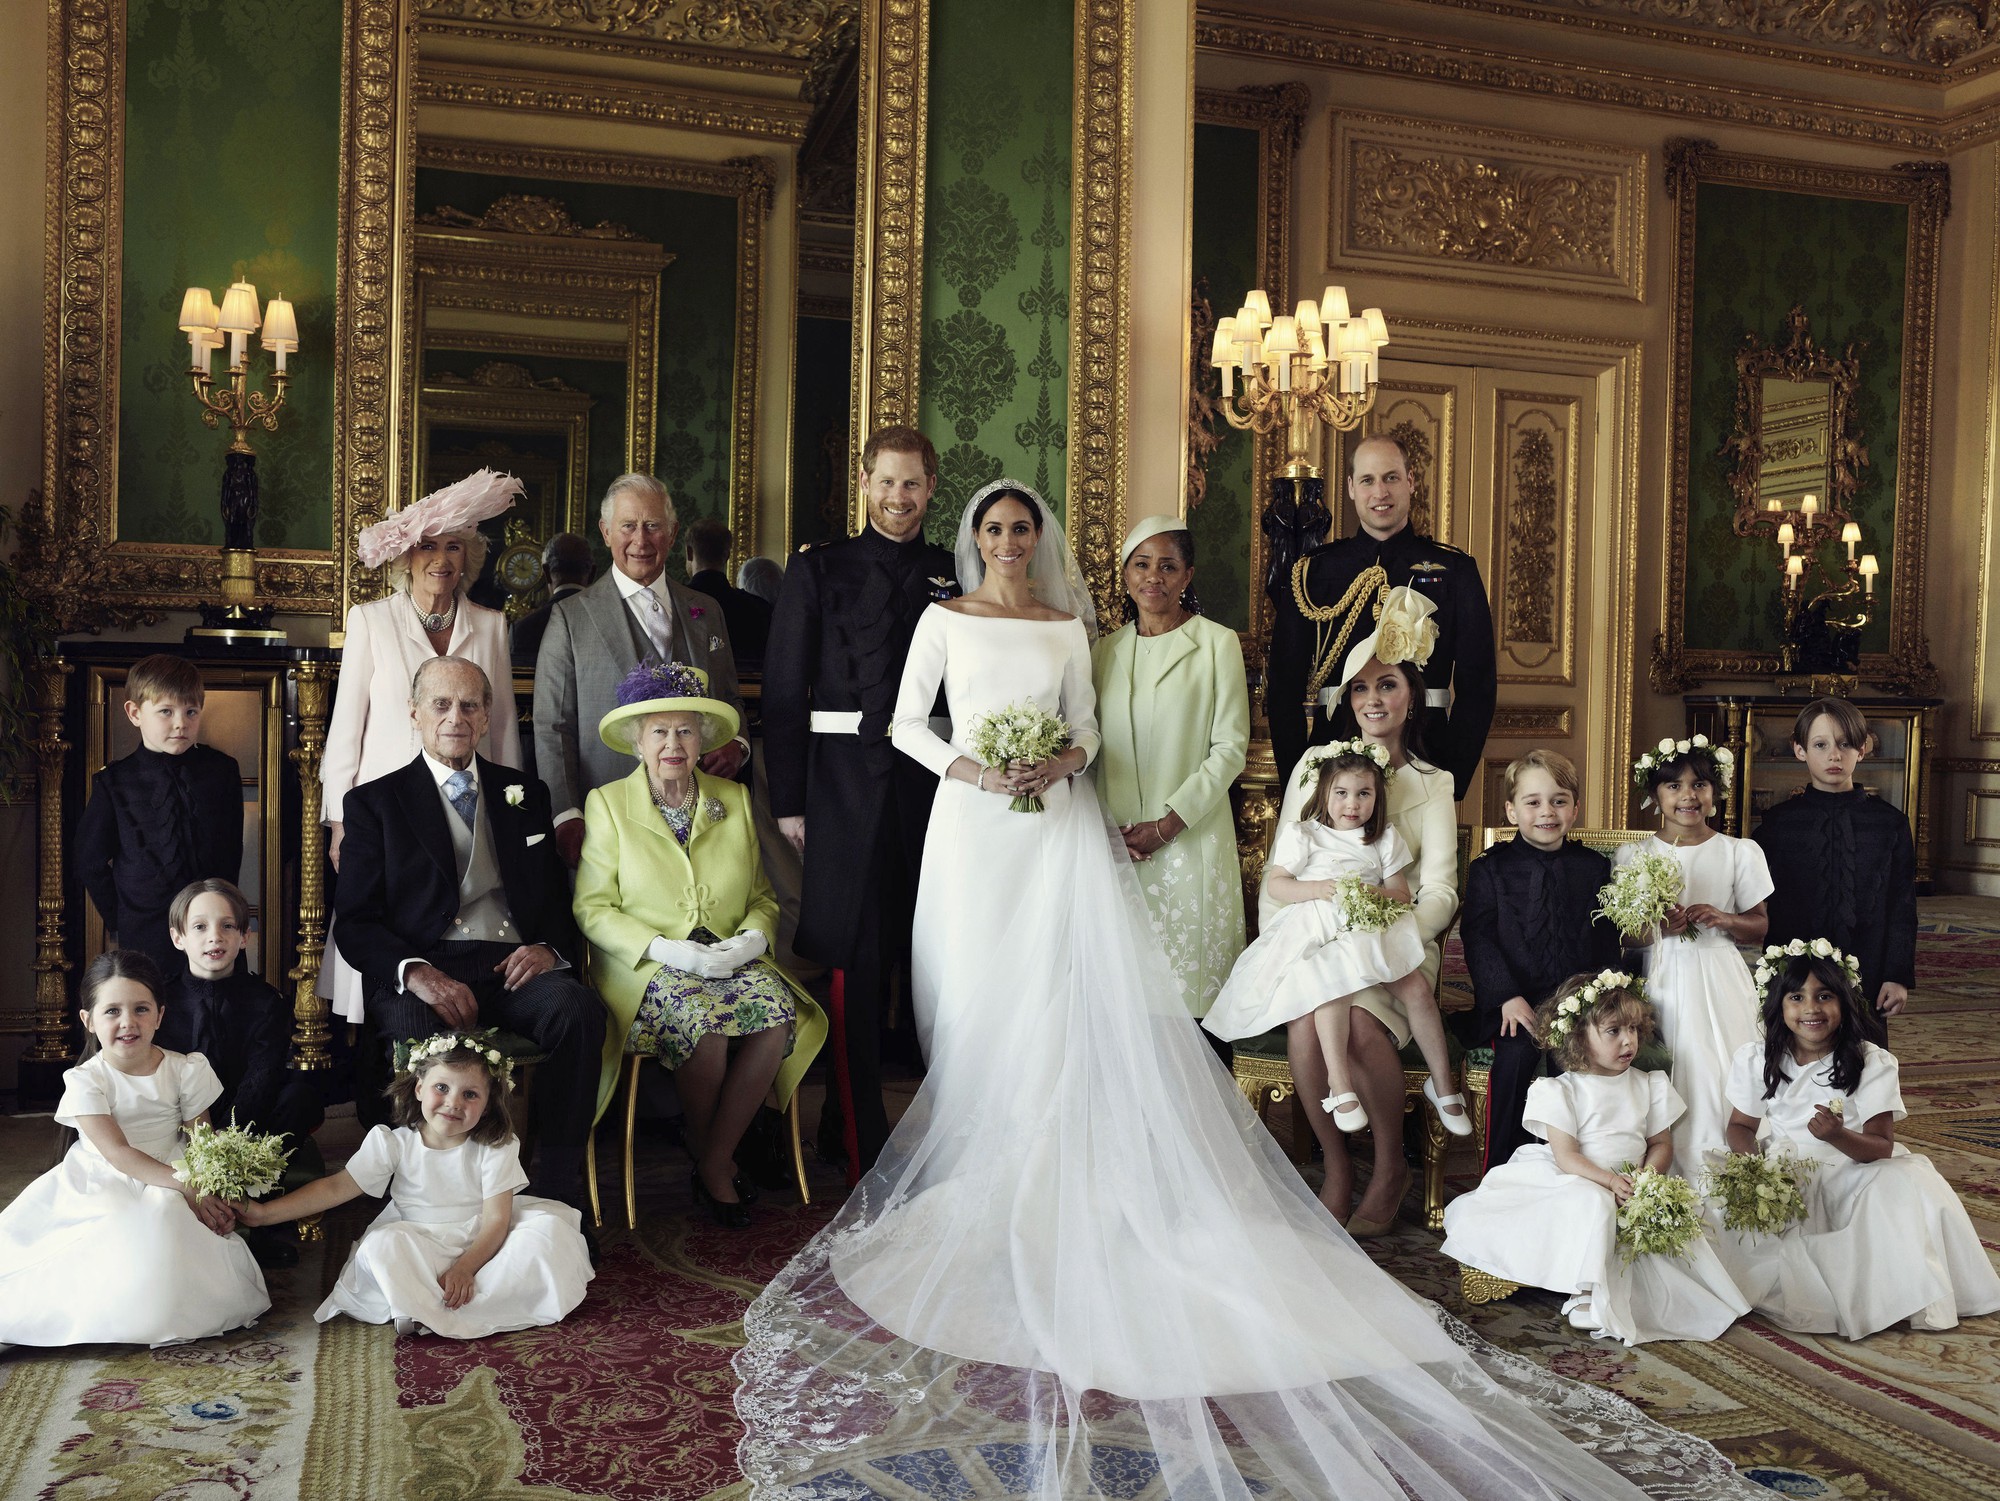 Hoàng gia Anh chính thức công bố ảnh cưới tuyệt đẹp của Hoàng tử Harry và Công nương Meghan - Ảnh 3.